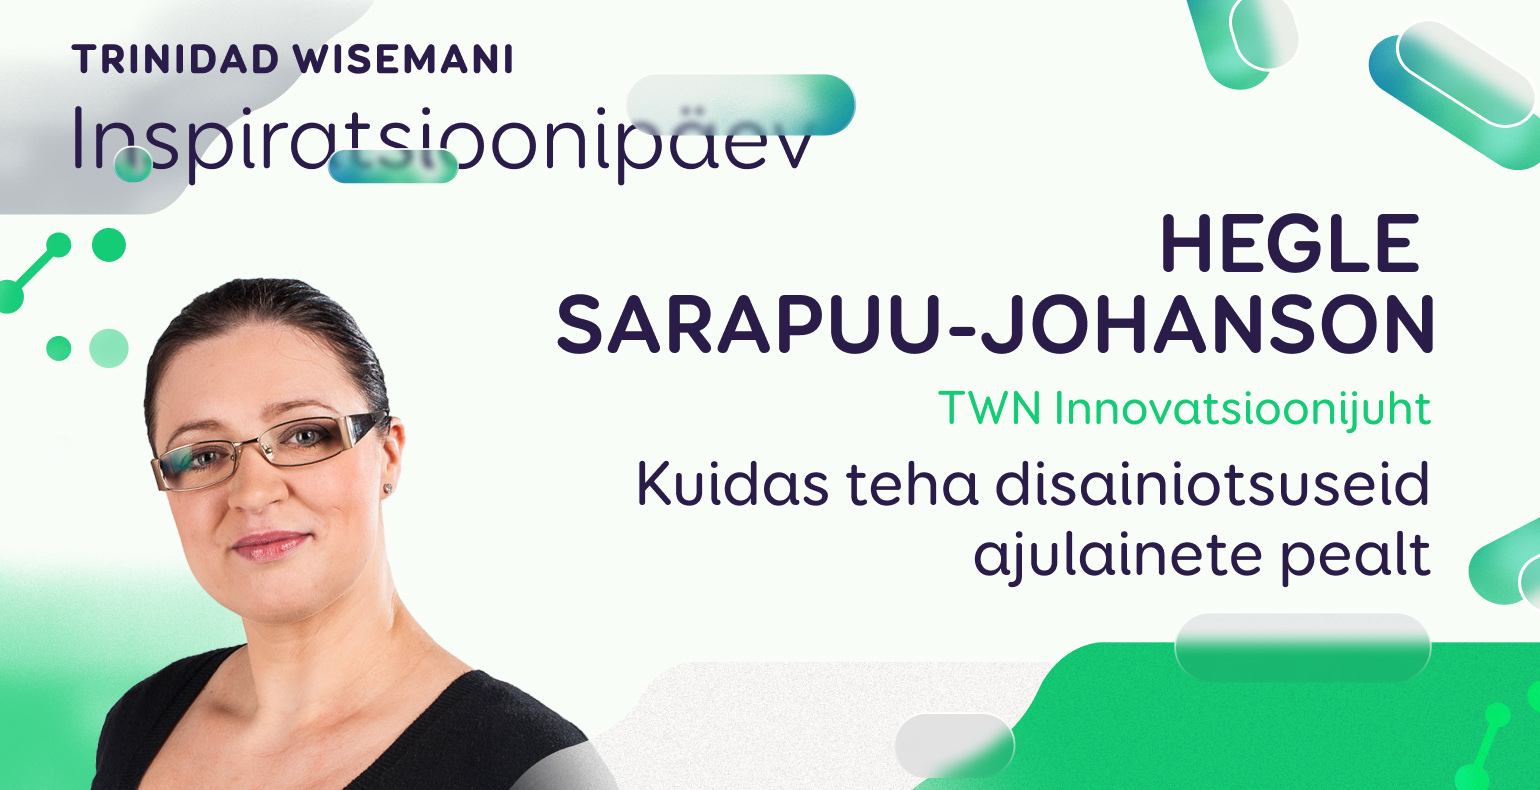 TWNi innovatsioonijuht Hegle Sarapuu-Johanson